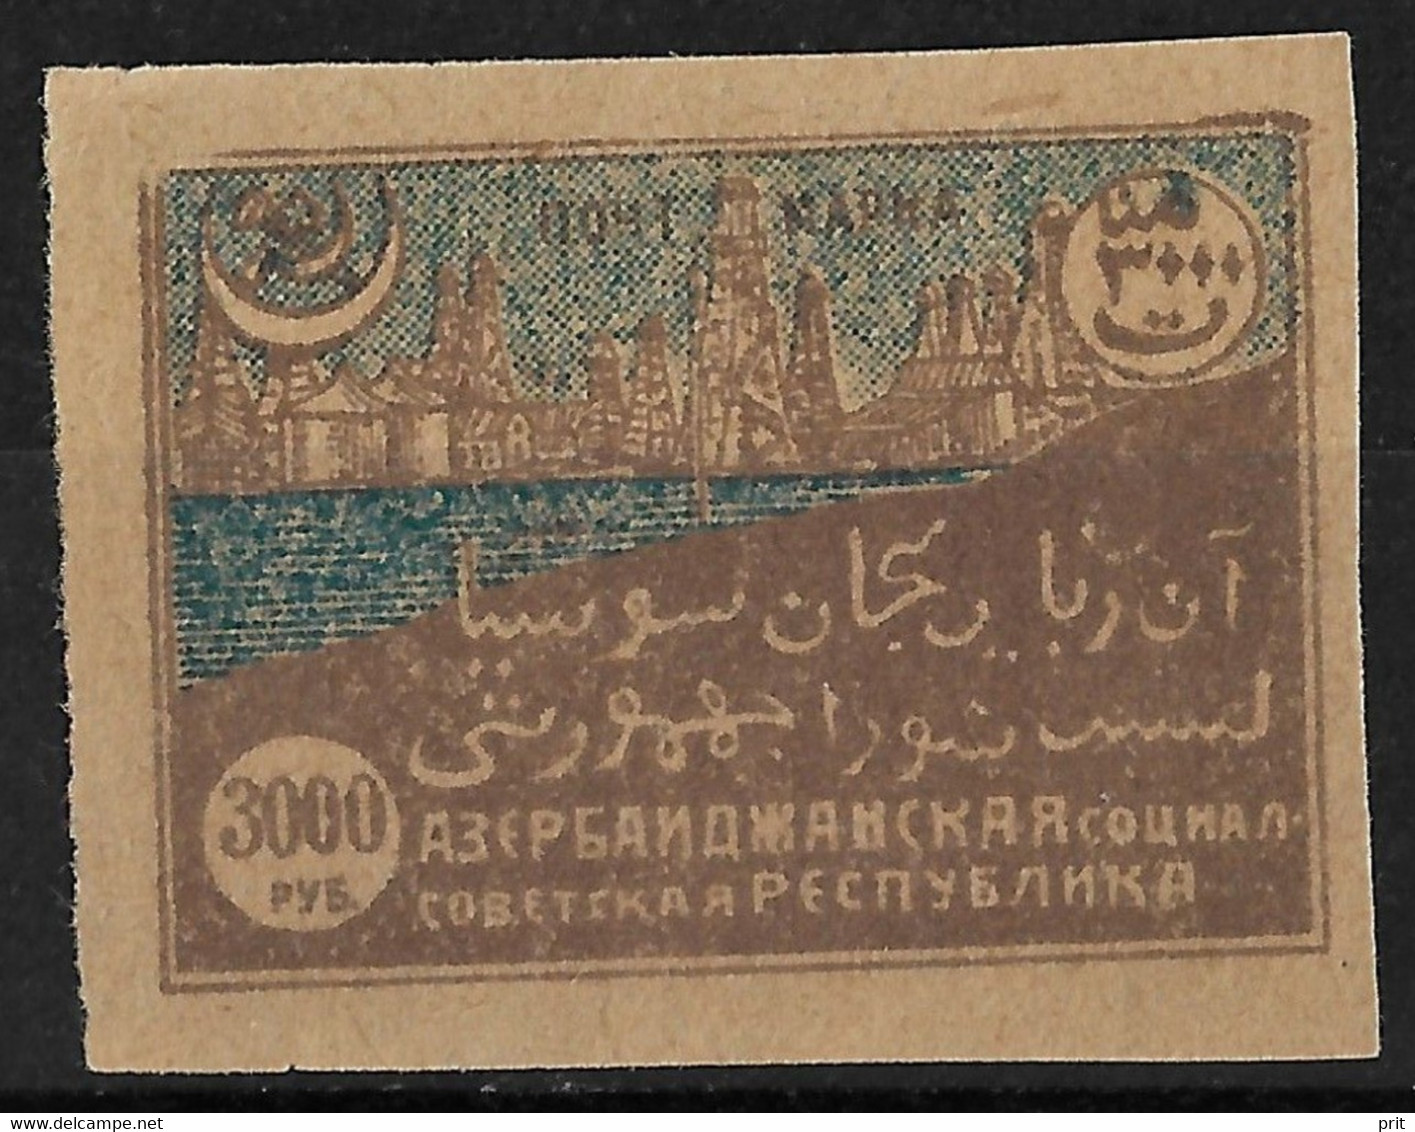 Azerbaijan Soviet Republic 1921 3000R Bibi Heybat Oilfields. Michel 26. MH. - Azerbaïjan